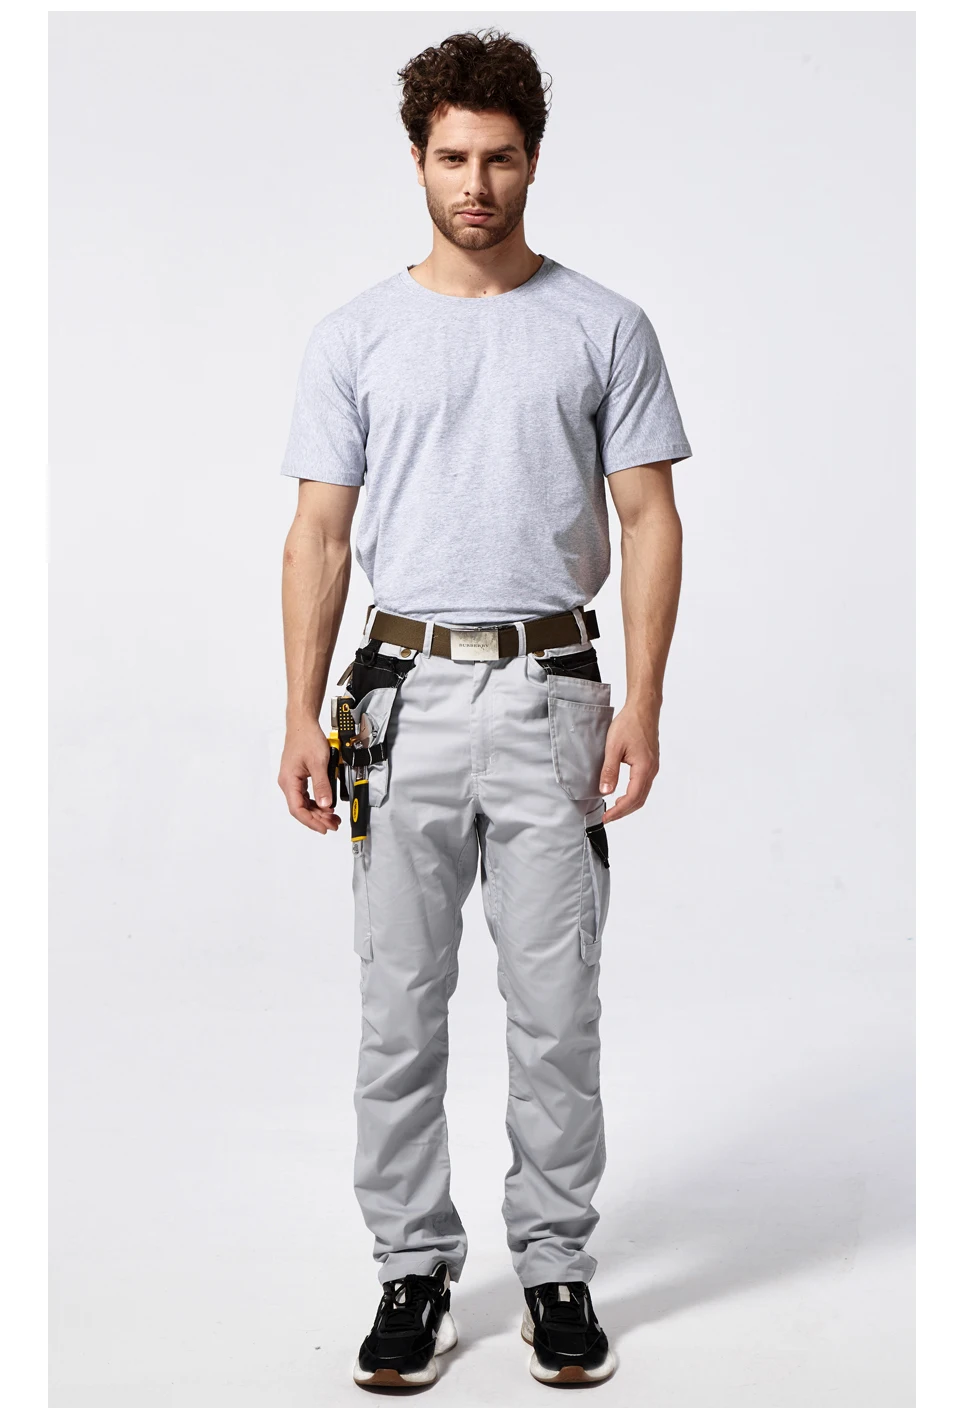 Bauskydd B218 Мужская Рабочая одежда мульти инструмент карманы/брюки летние безопасные рабочие брюки механика Карго спецодежда